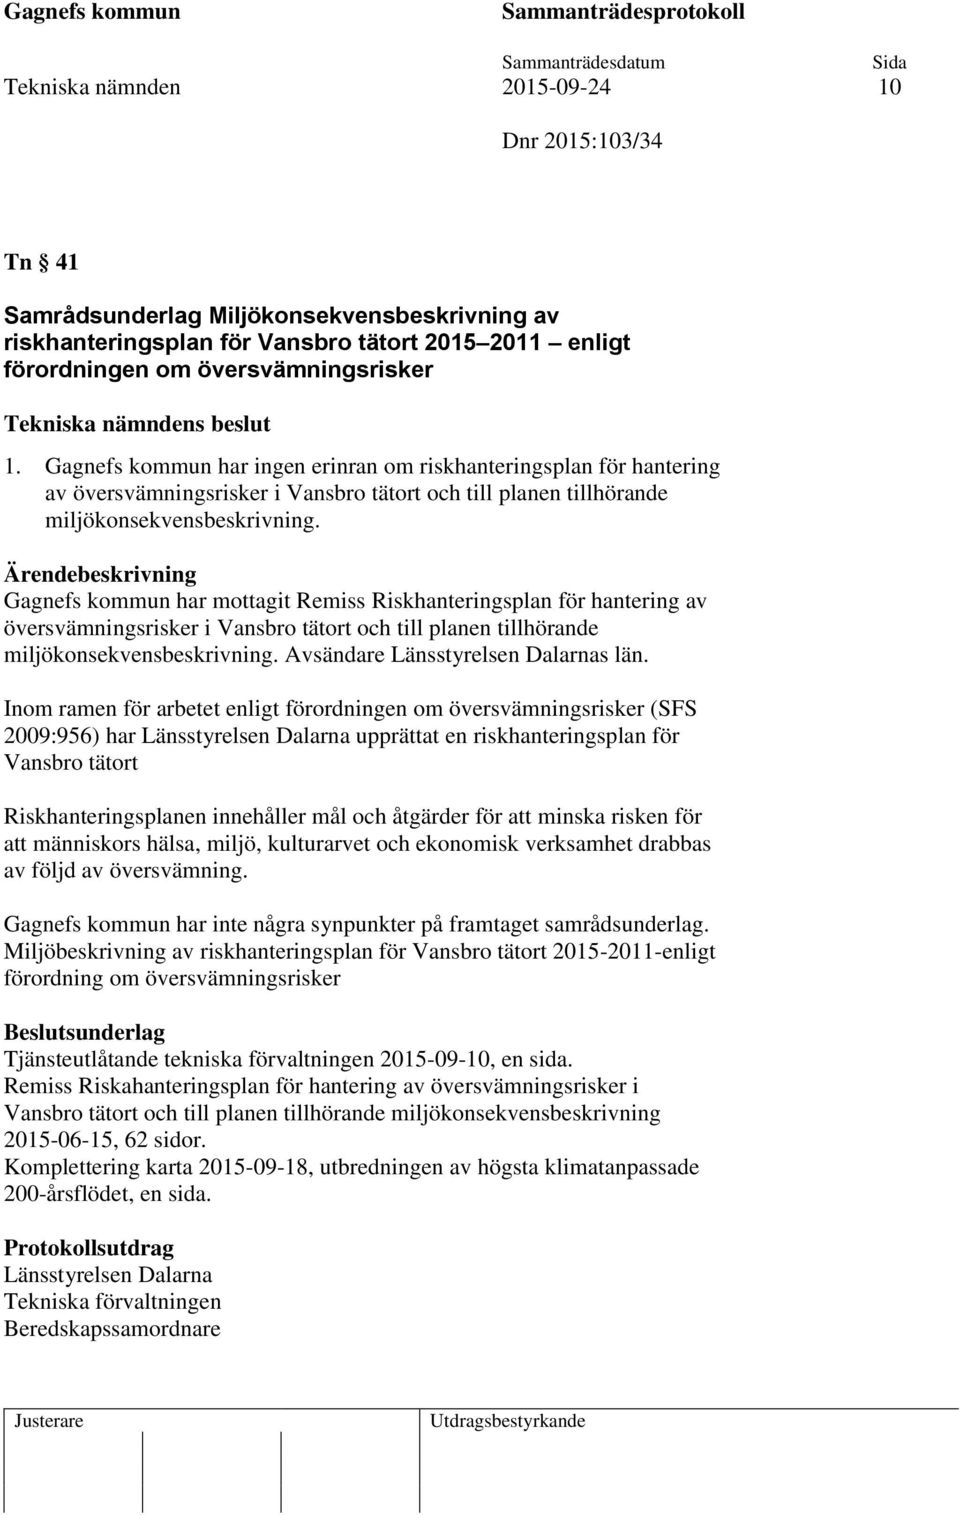 Gagnefs kommun har mottagit Remiss Riskhanteringsplan för hantering av översvämningsrisker i Vansbro tätort och till planen tillhörande miljökonsekvensbeskrivning.